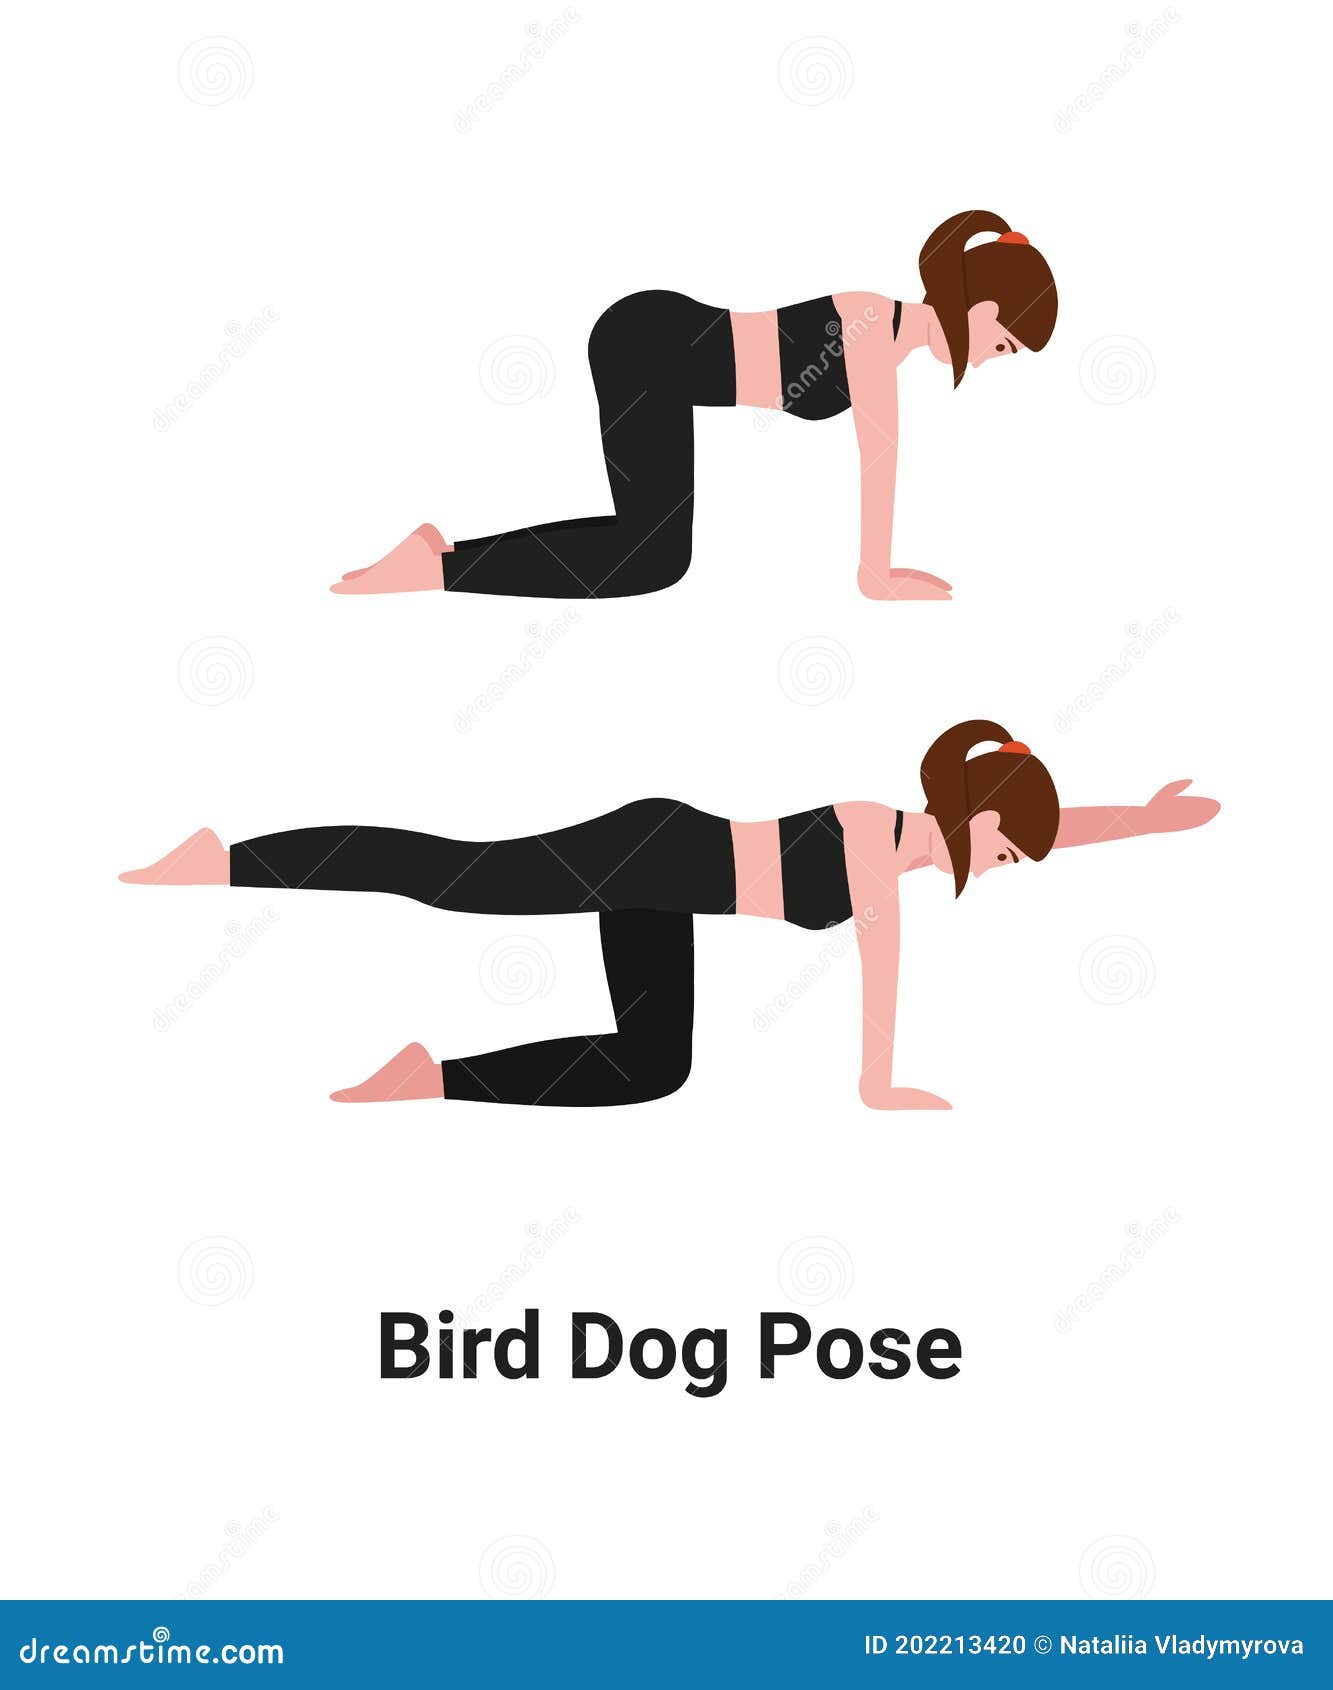 Bird Dog Pose Variation: Bend Back and Balance - Hugger Mugger